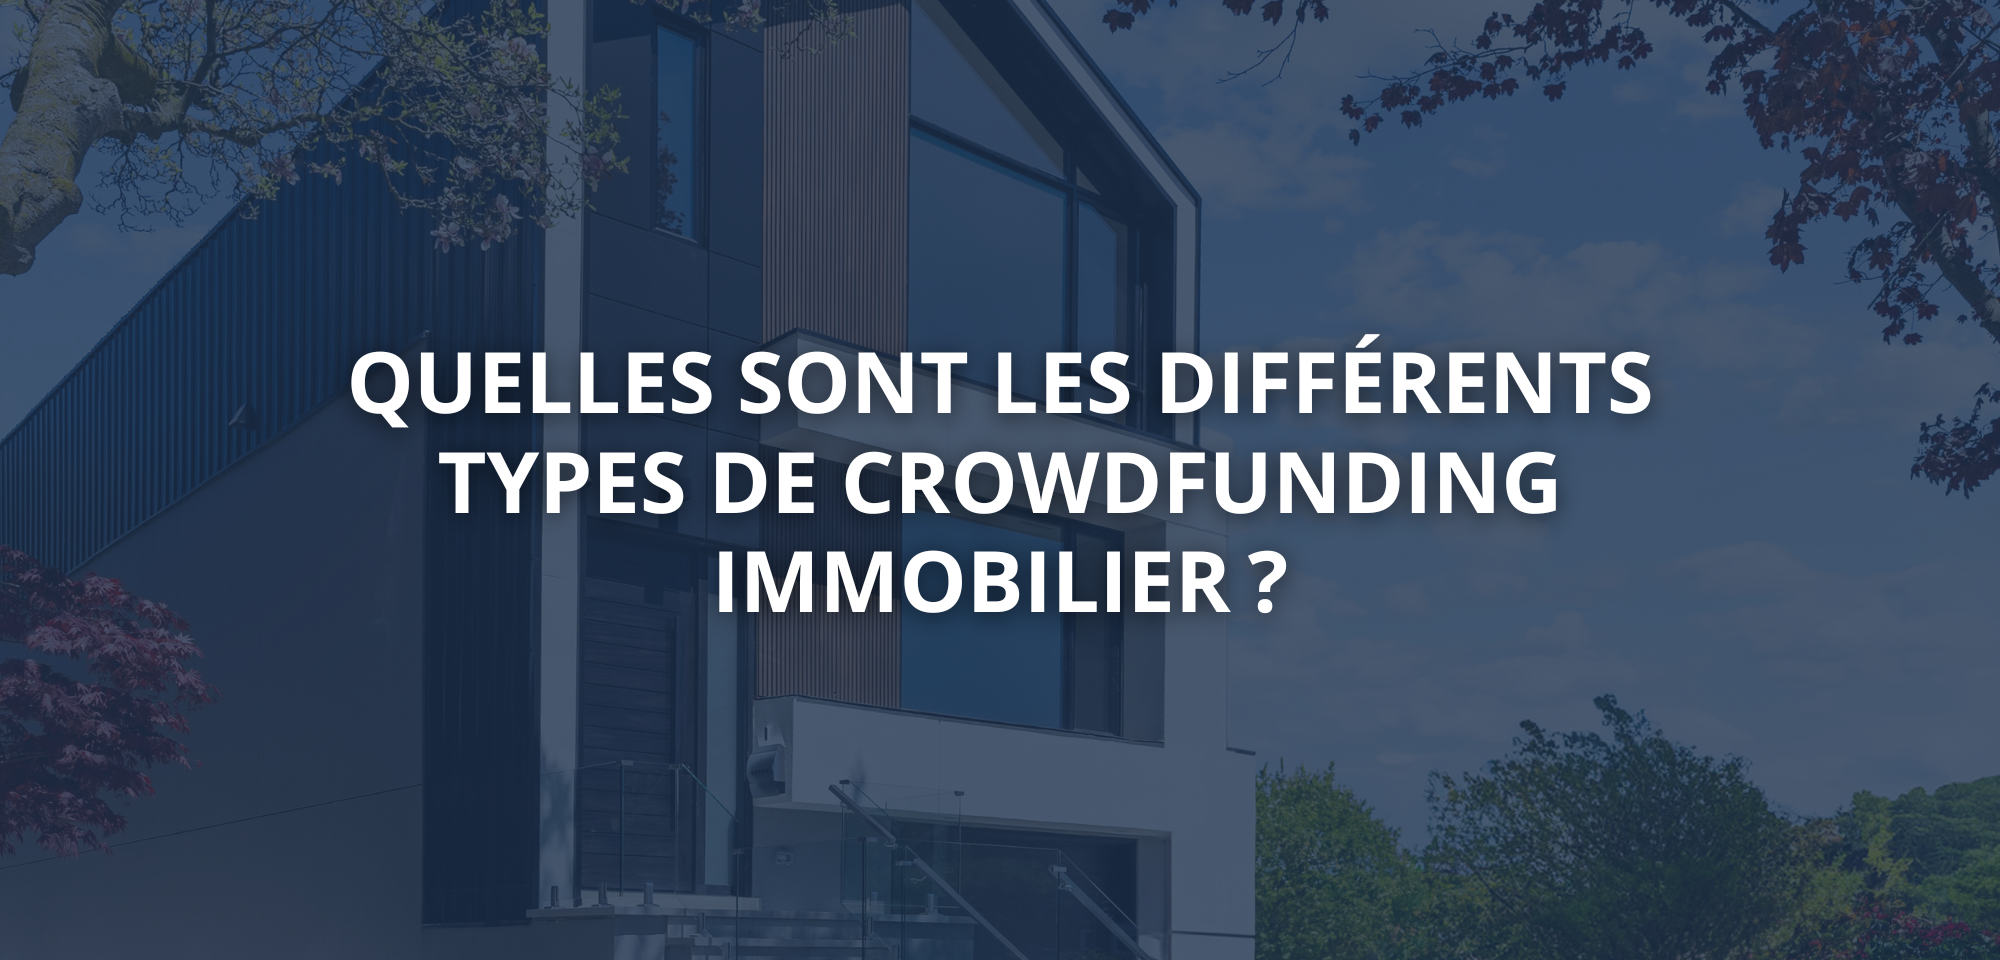 Quelles sont les différents types de crowdfunding immobilier 